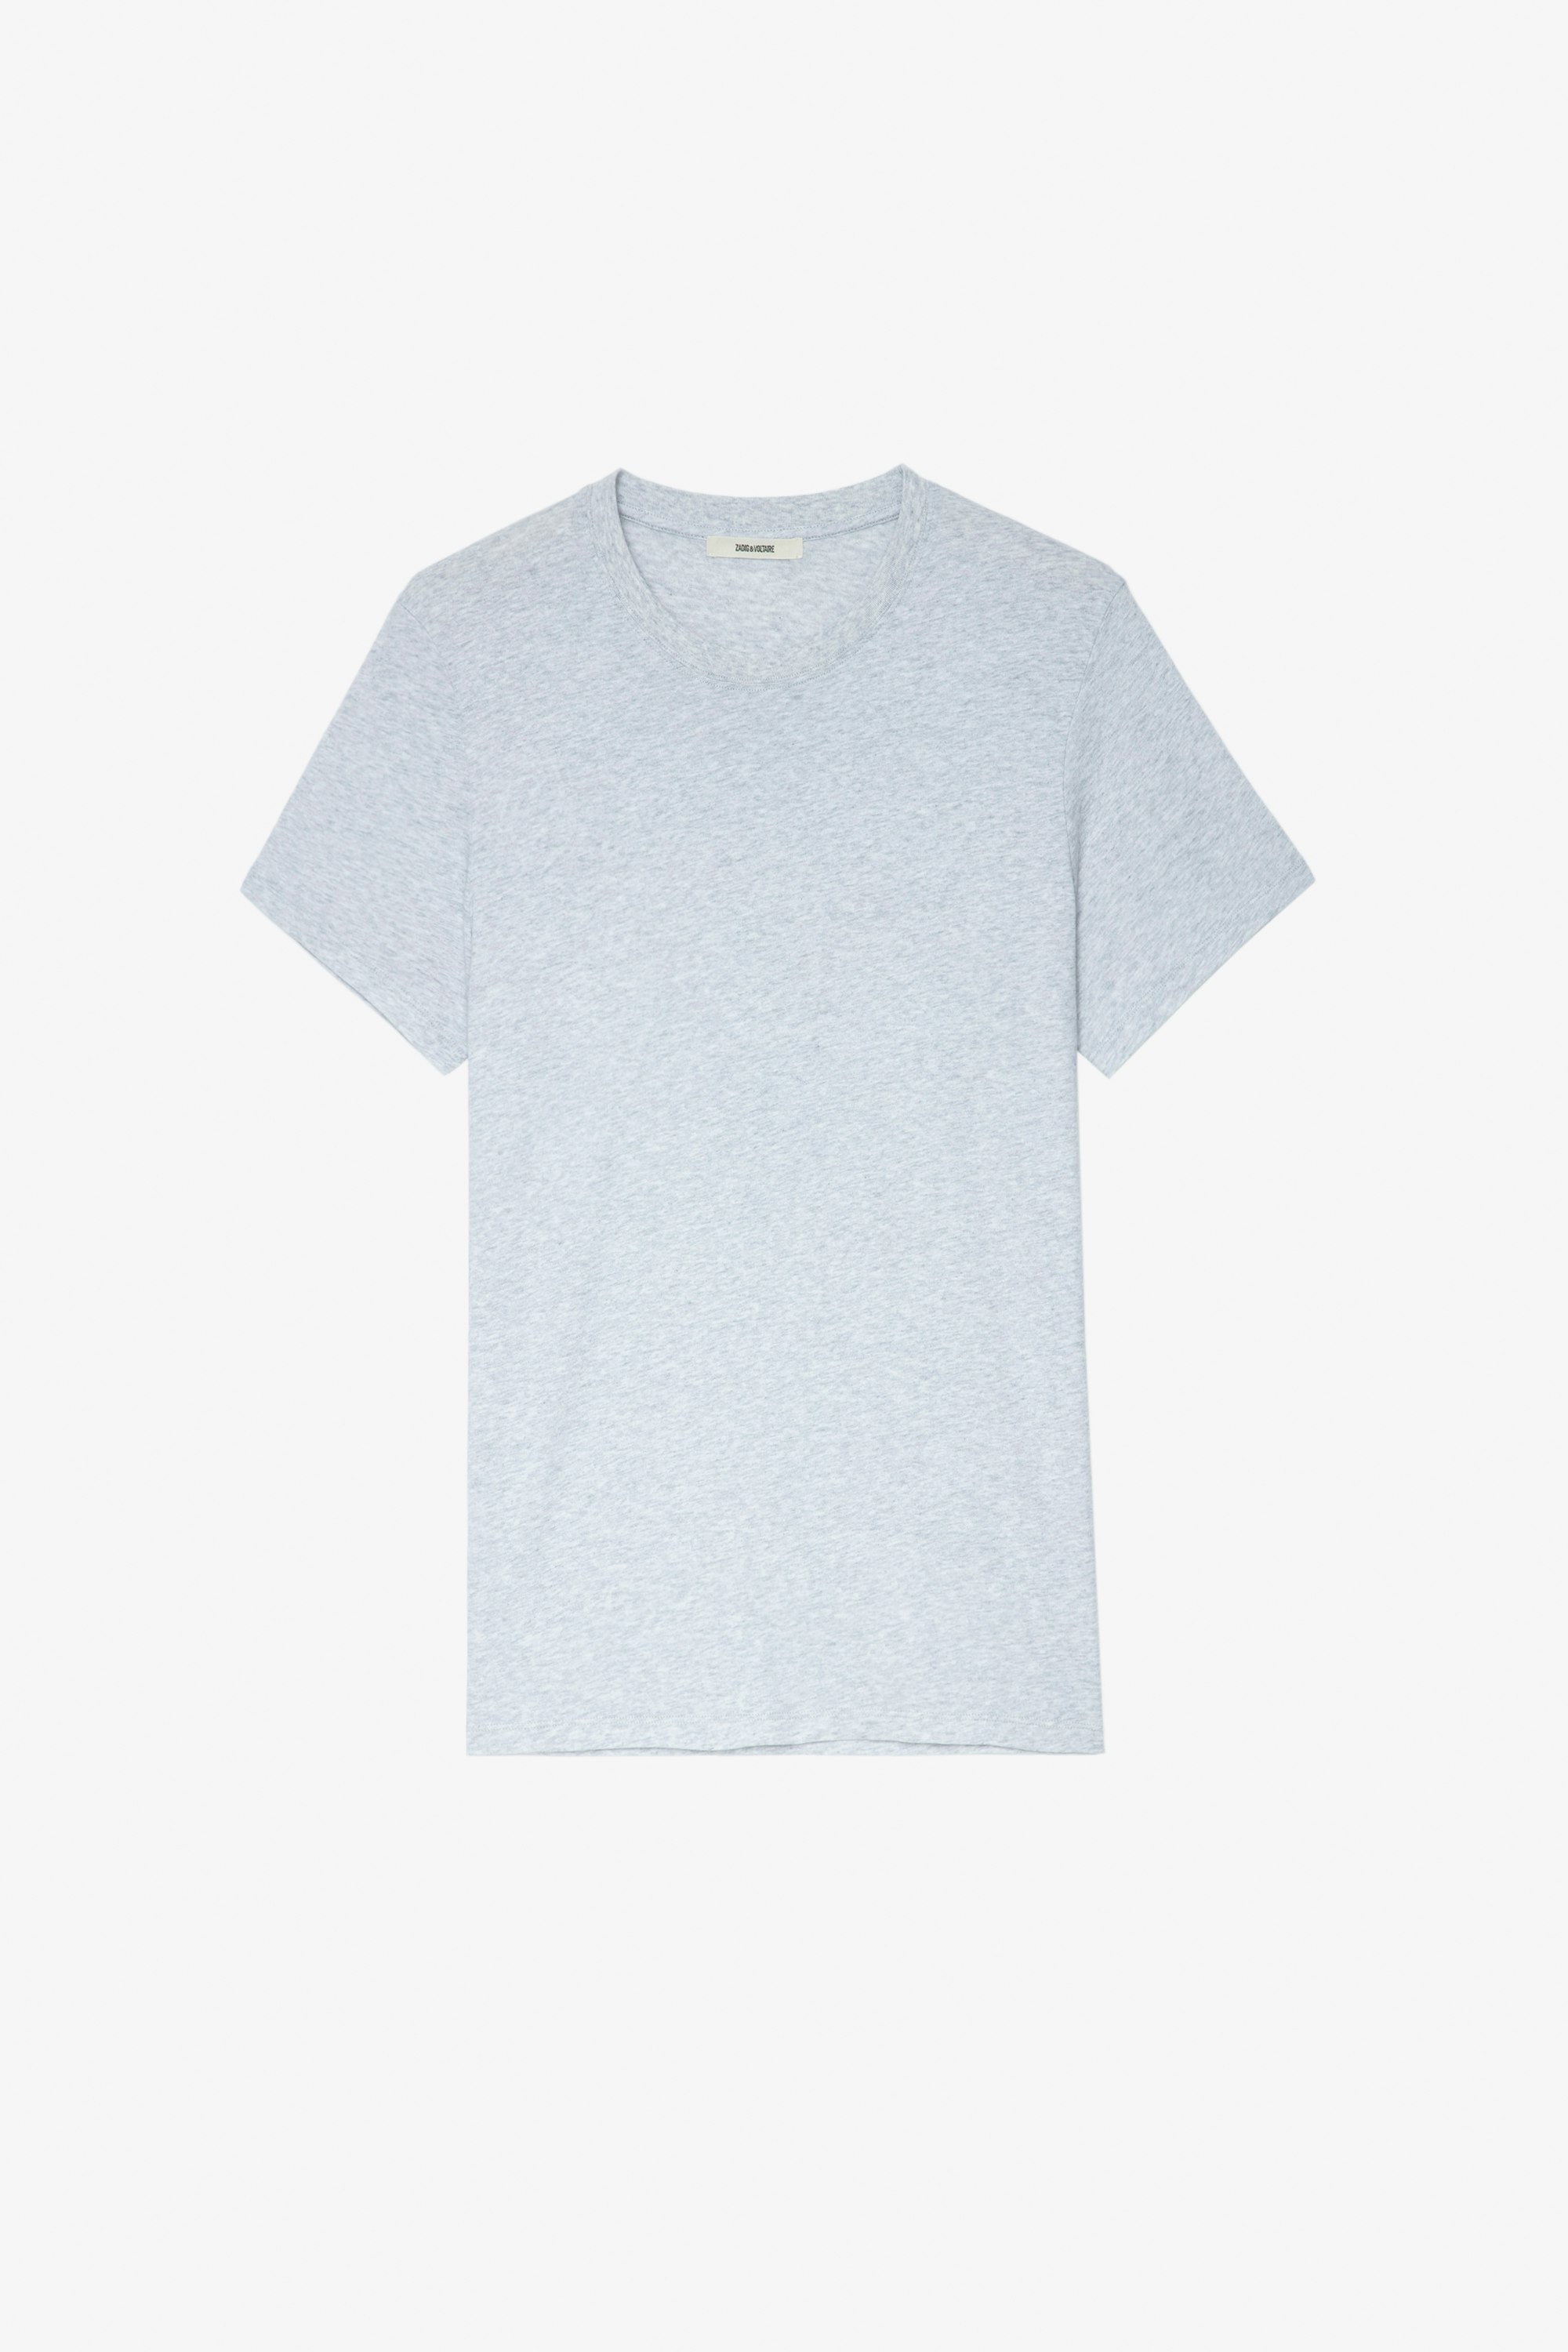 Ted T-Shirt 杢グレーコットン 背面パームツリープリント Tシャツ メンズ